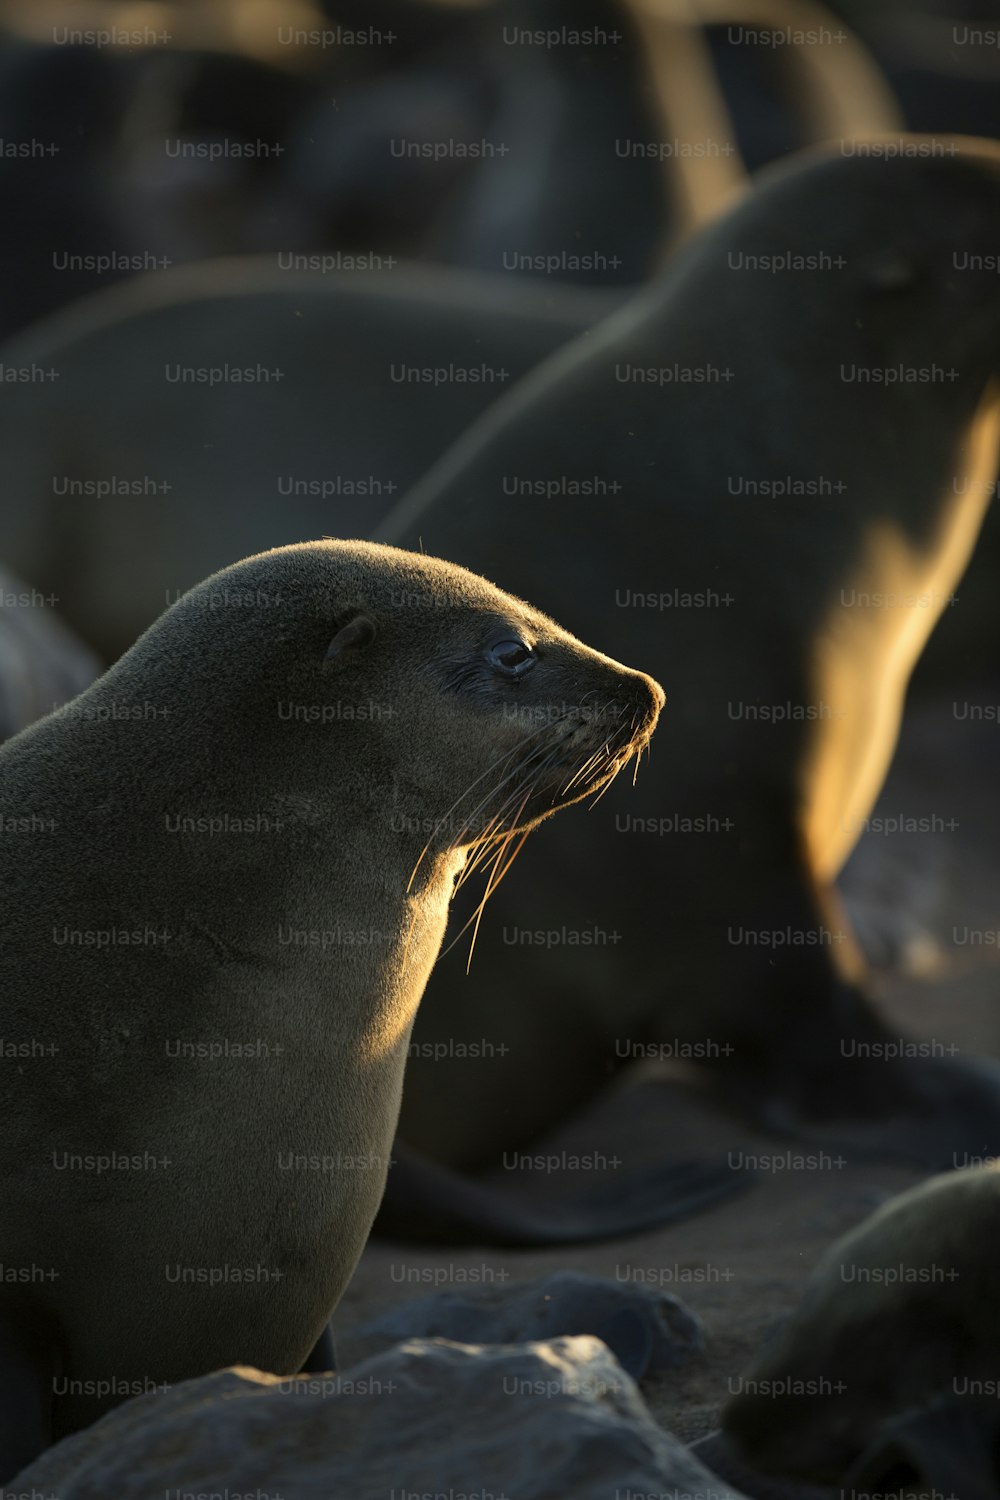 Uma foca na colônia de focas de Cape Cross, Namíbia.